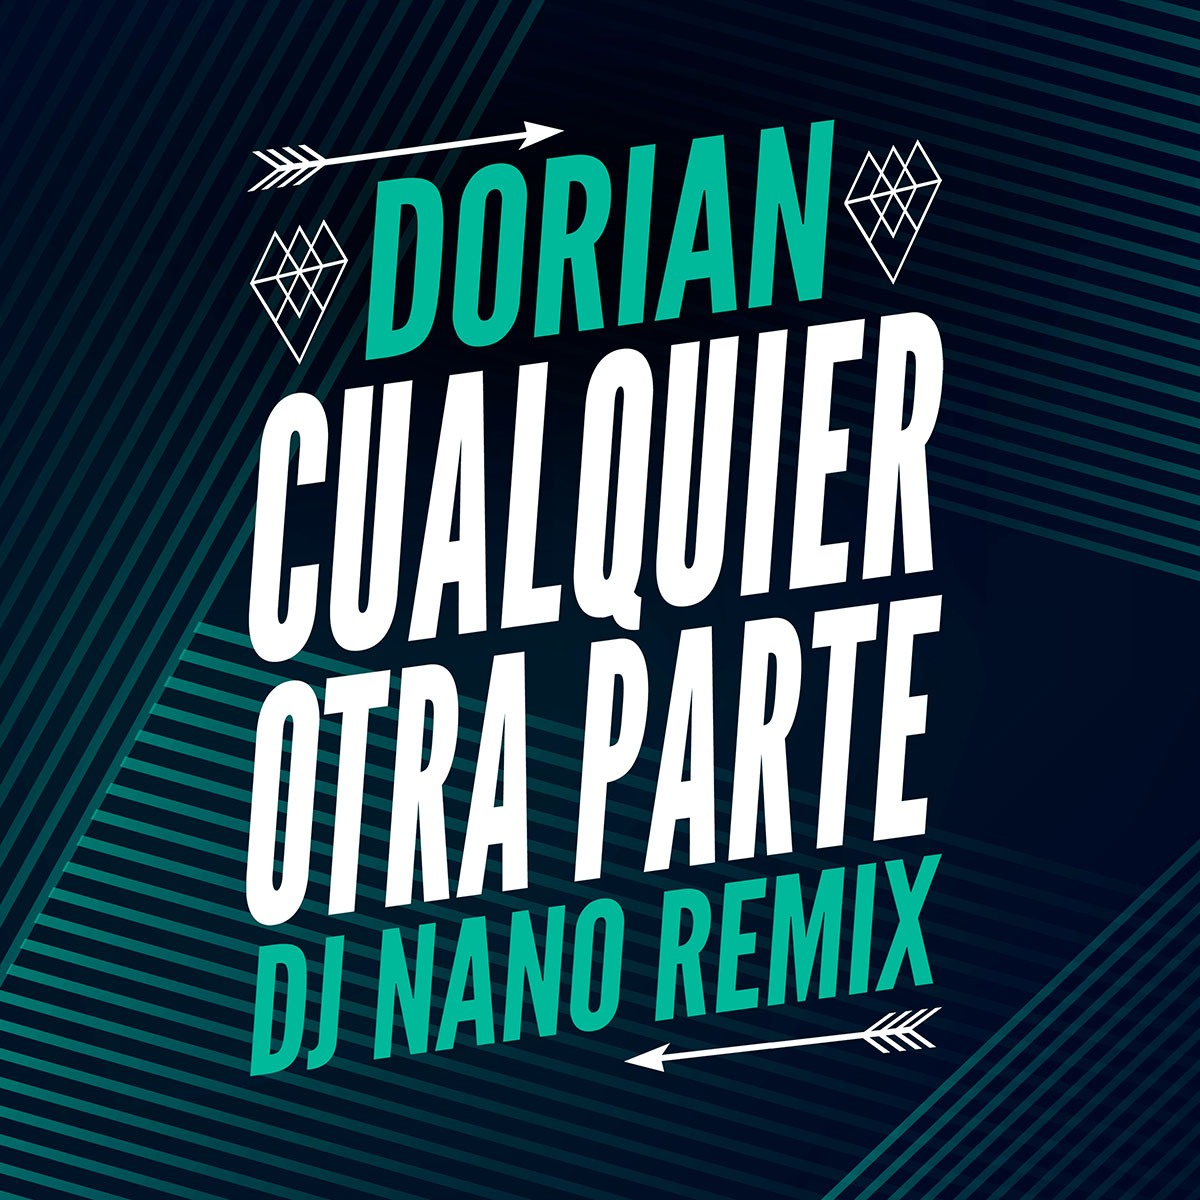 Dorian-Cualquier-otra-parte-dj-nano-remix-portada